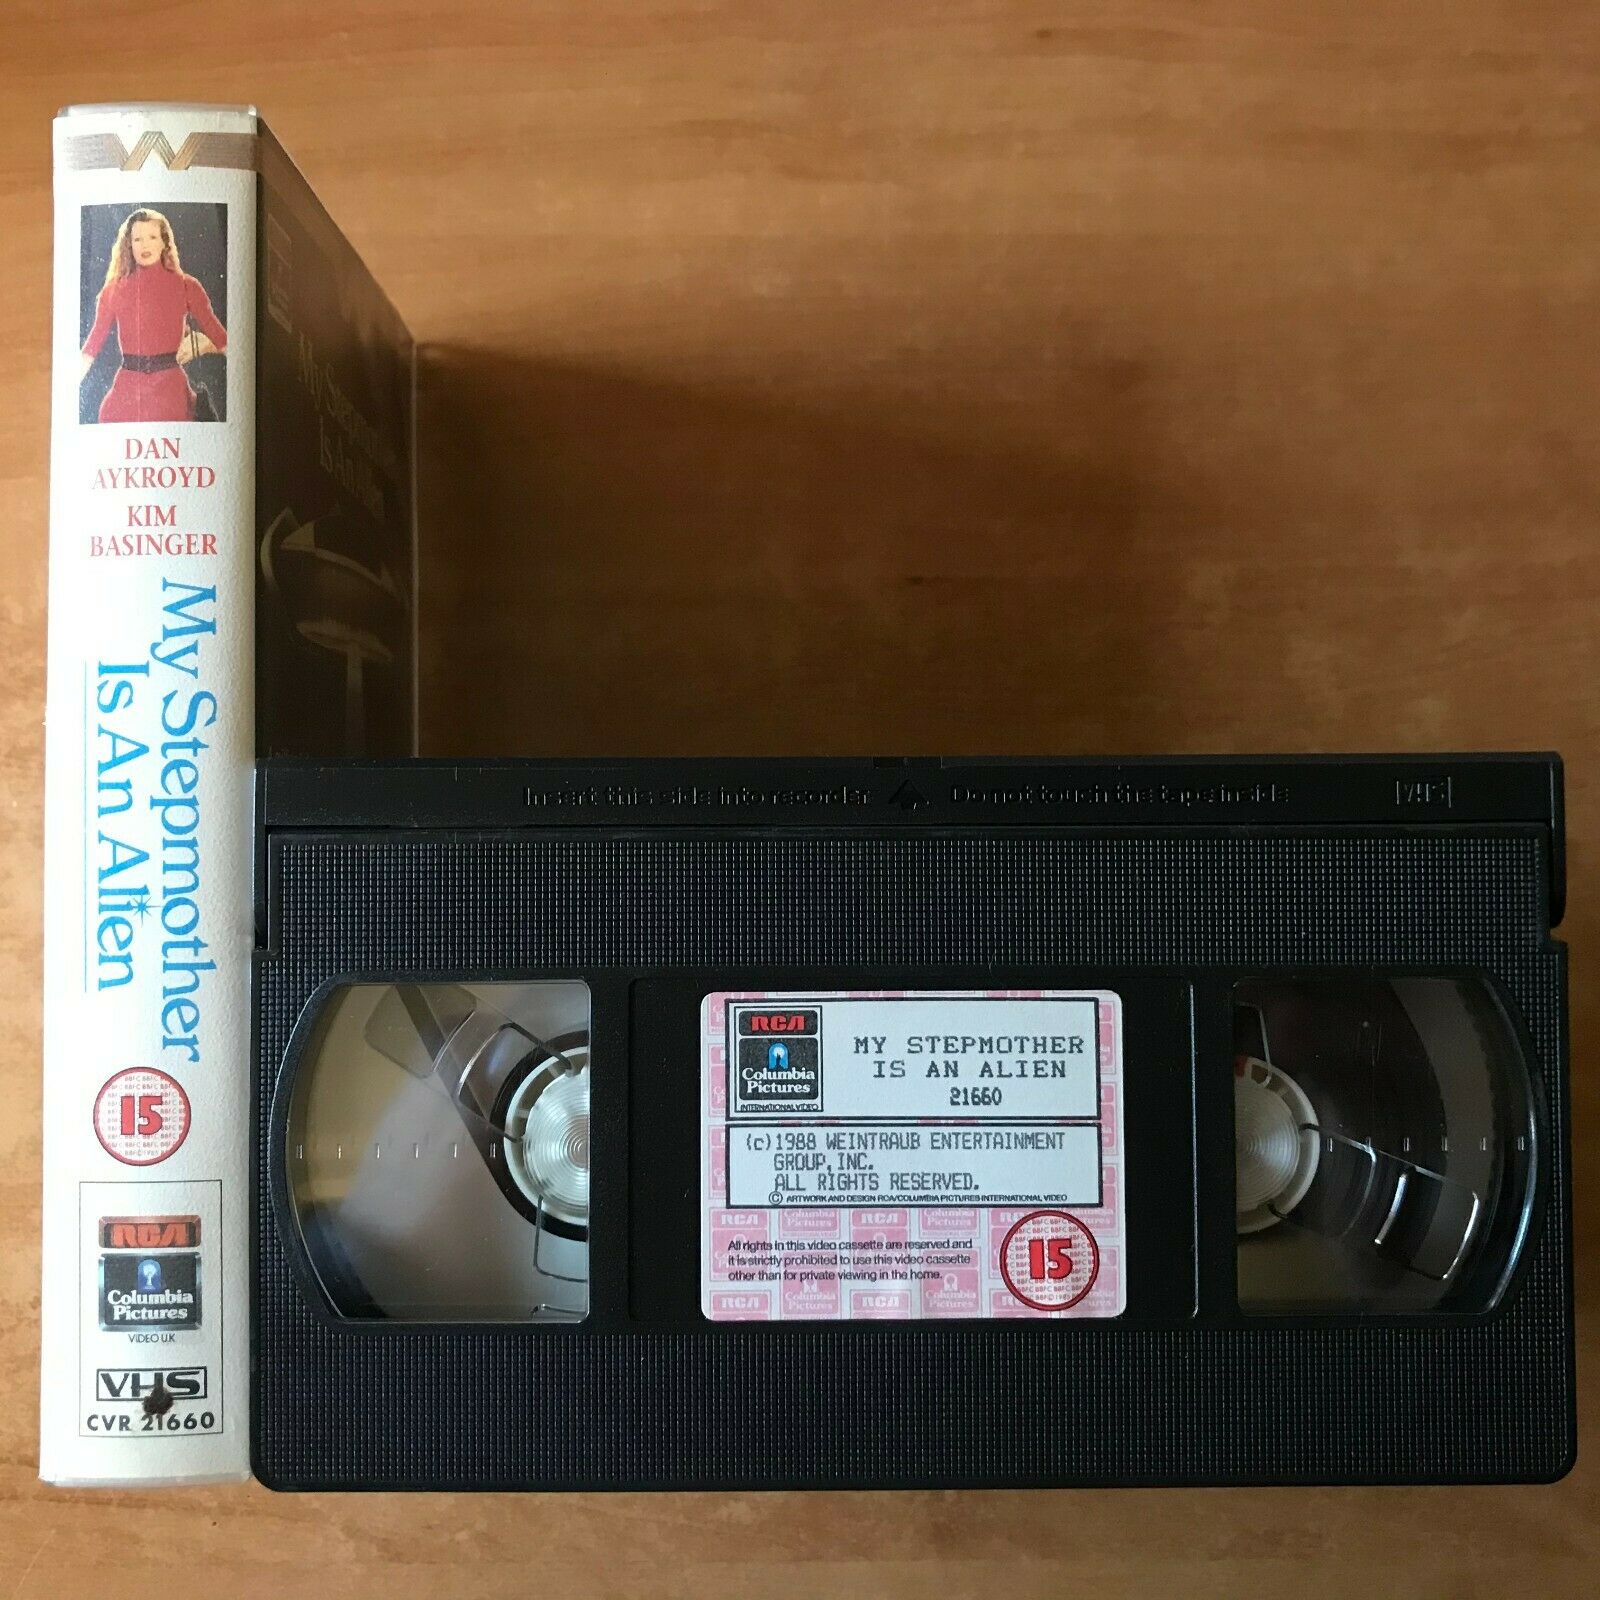 My Stepmother Is An Alien: Dan Aykroyd & Kim Basinger - Sci-Fi Comedy - Pal VHS-